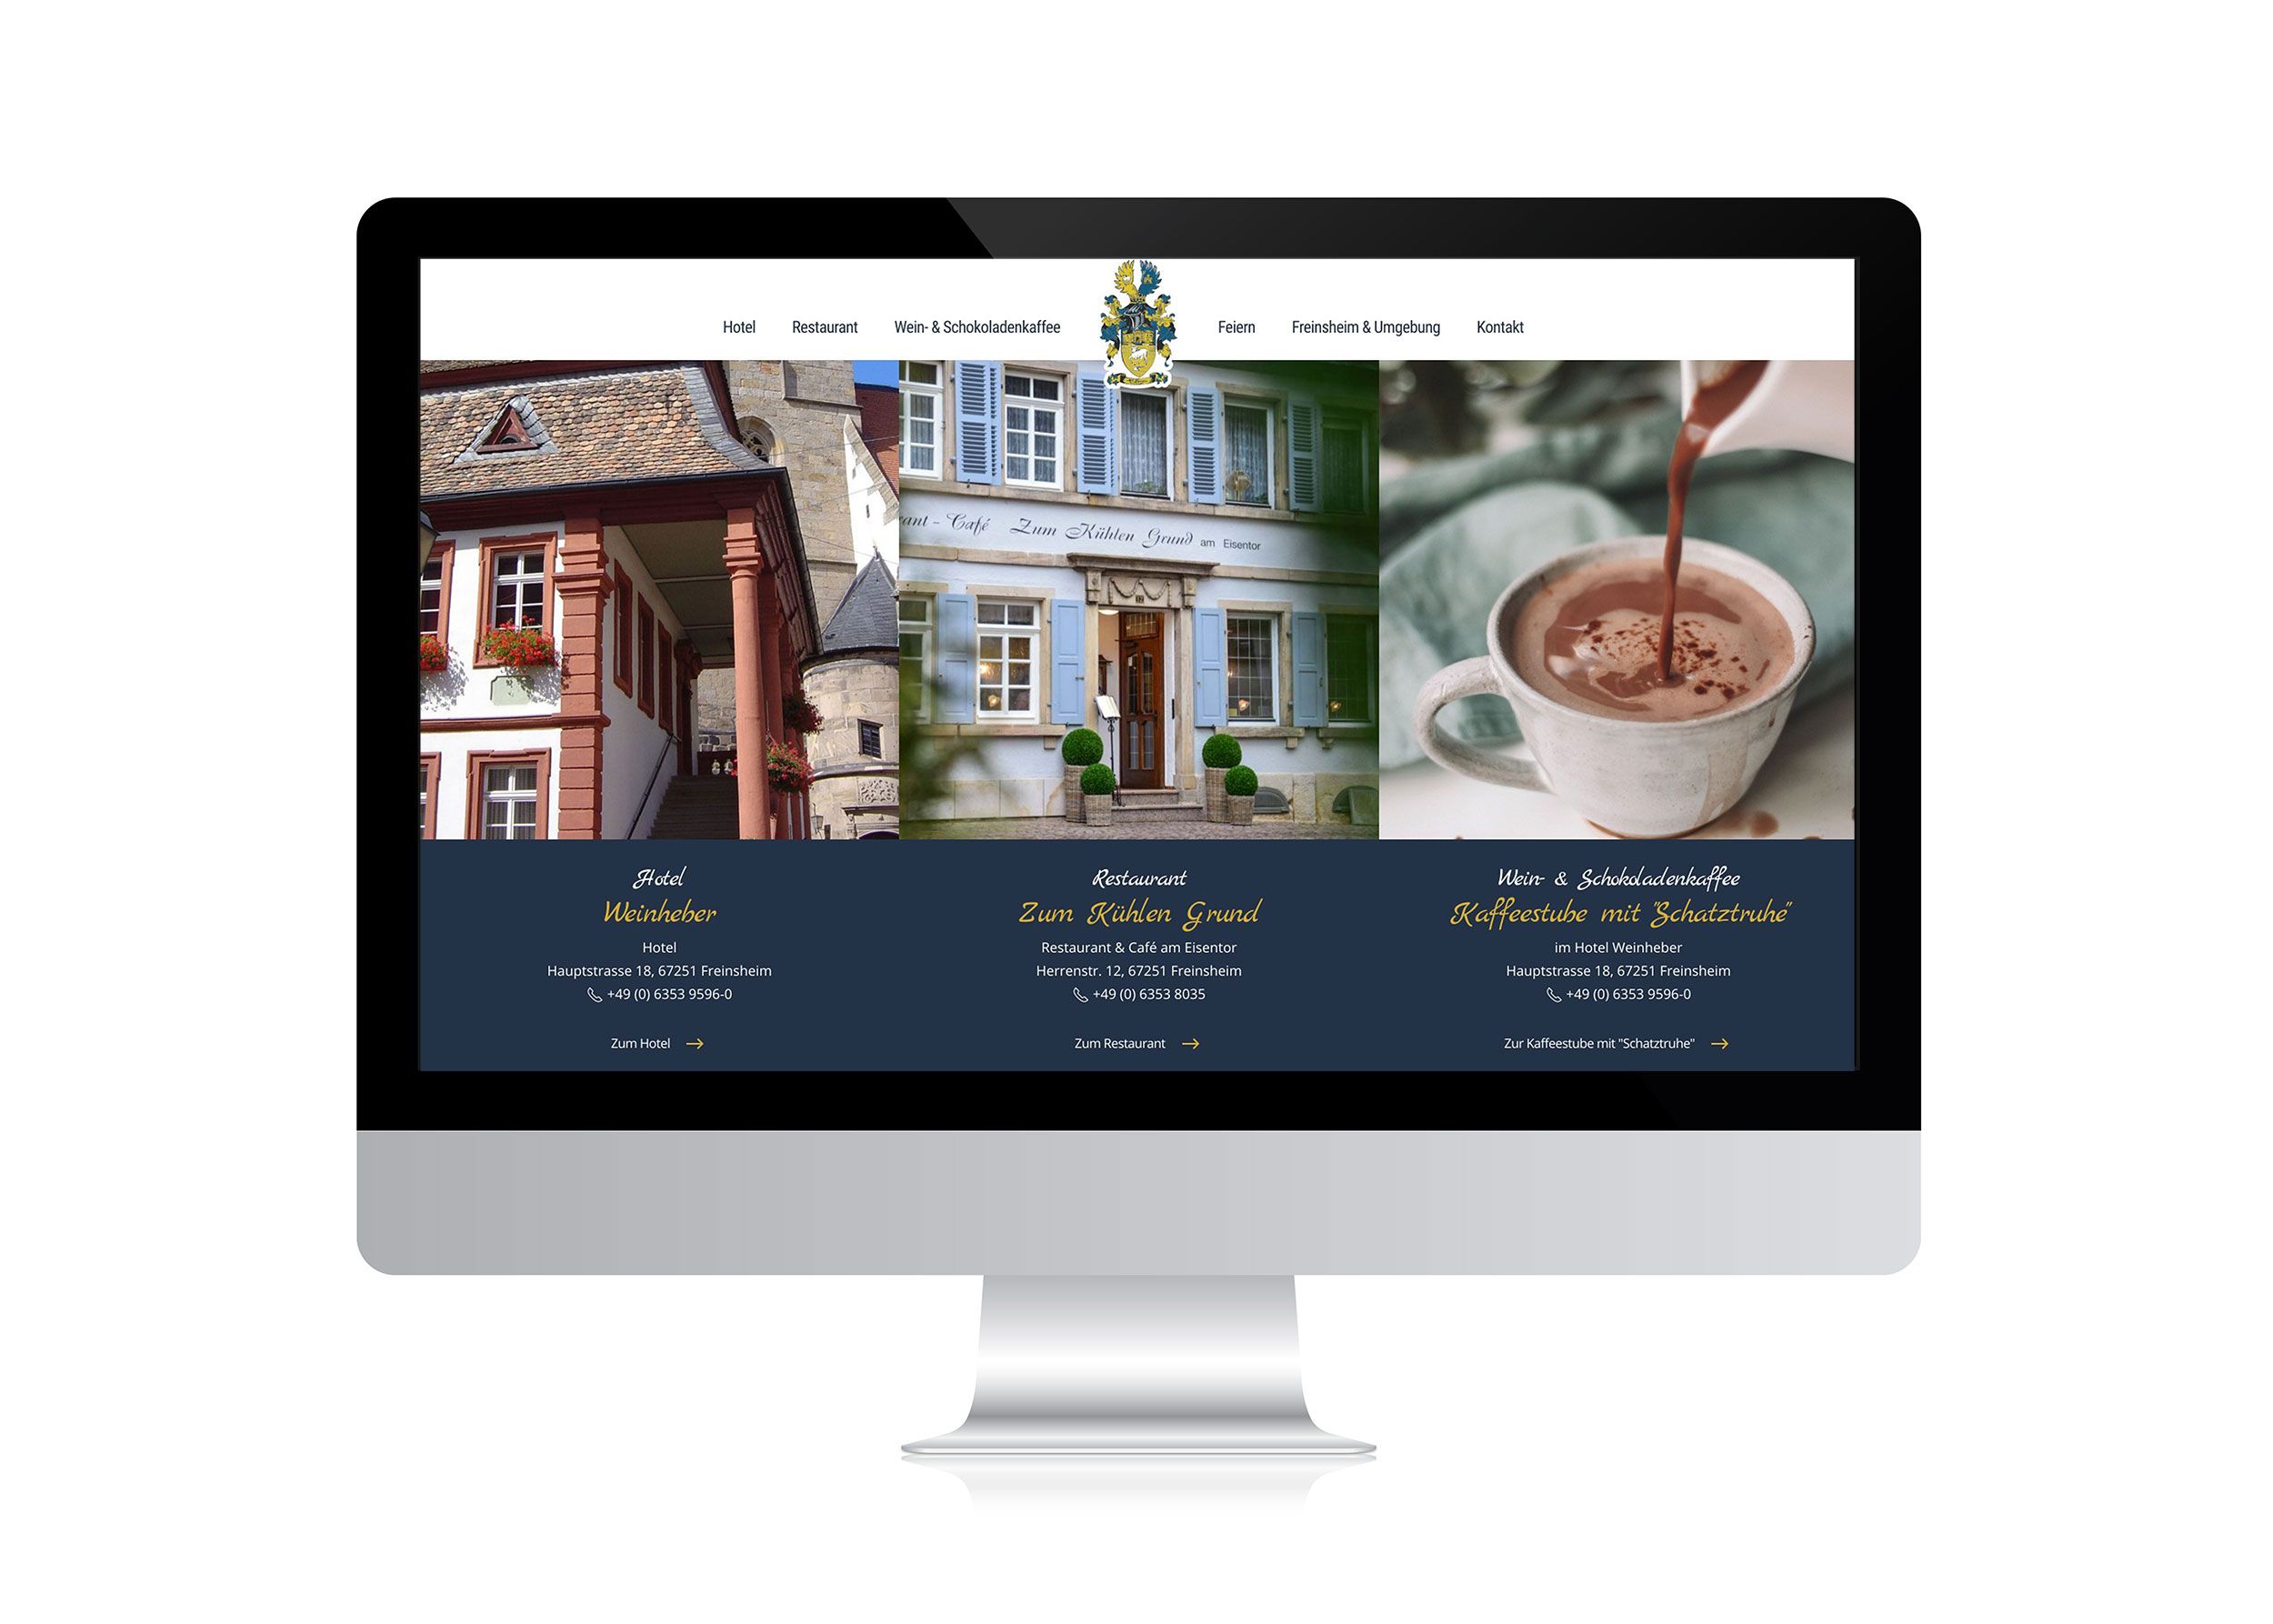 Webdesign für Hotel und Restaurant Hornung